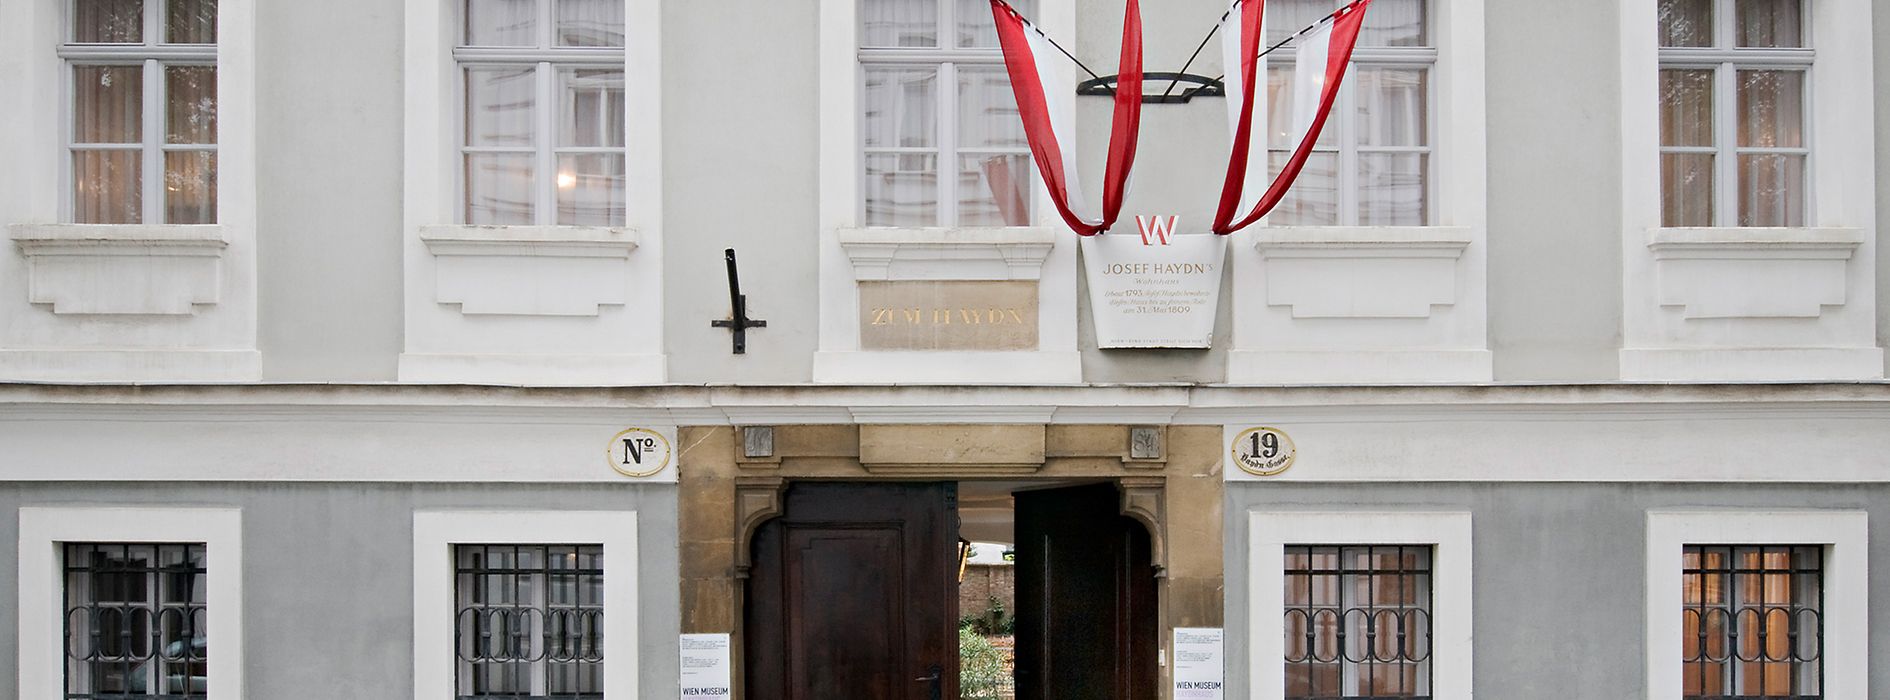 Haydnhaus, Eingang